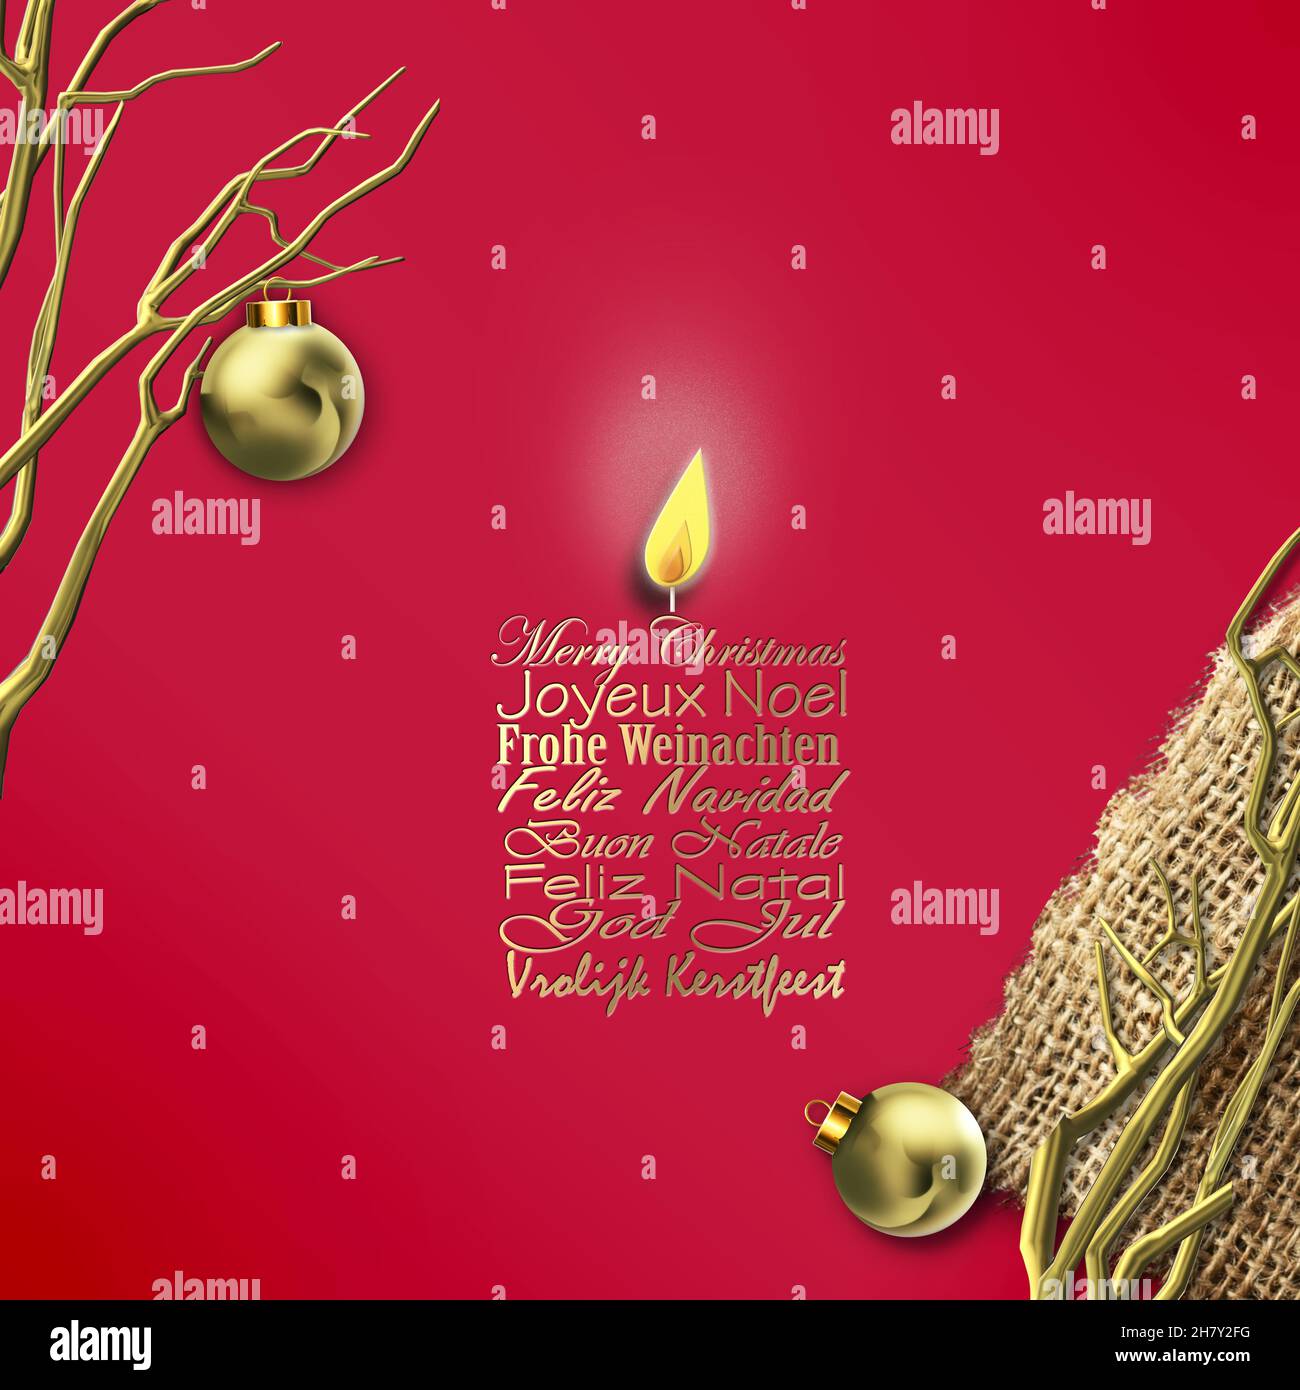 Frohe Weihnachten wünscht Übersetzung in Englisch, Französisch Deutsch  Portugiesisch Italienisch Spanisch Schwedisch auf rotem Hintergrund in Form  von Kerze, abstrakte goldene Baumzweige auf Canva, Weihnachten Goldkugeln.  3Drender Stockfotografie - Alamy